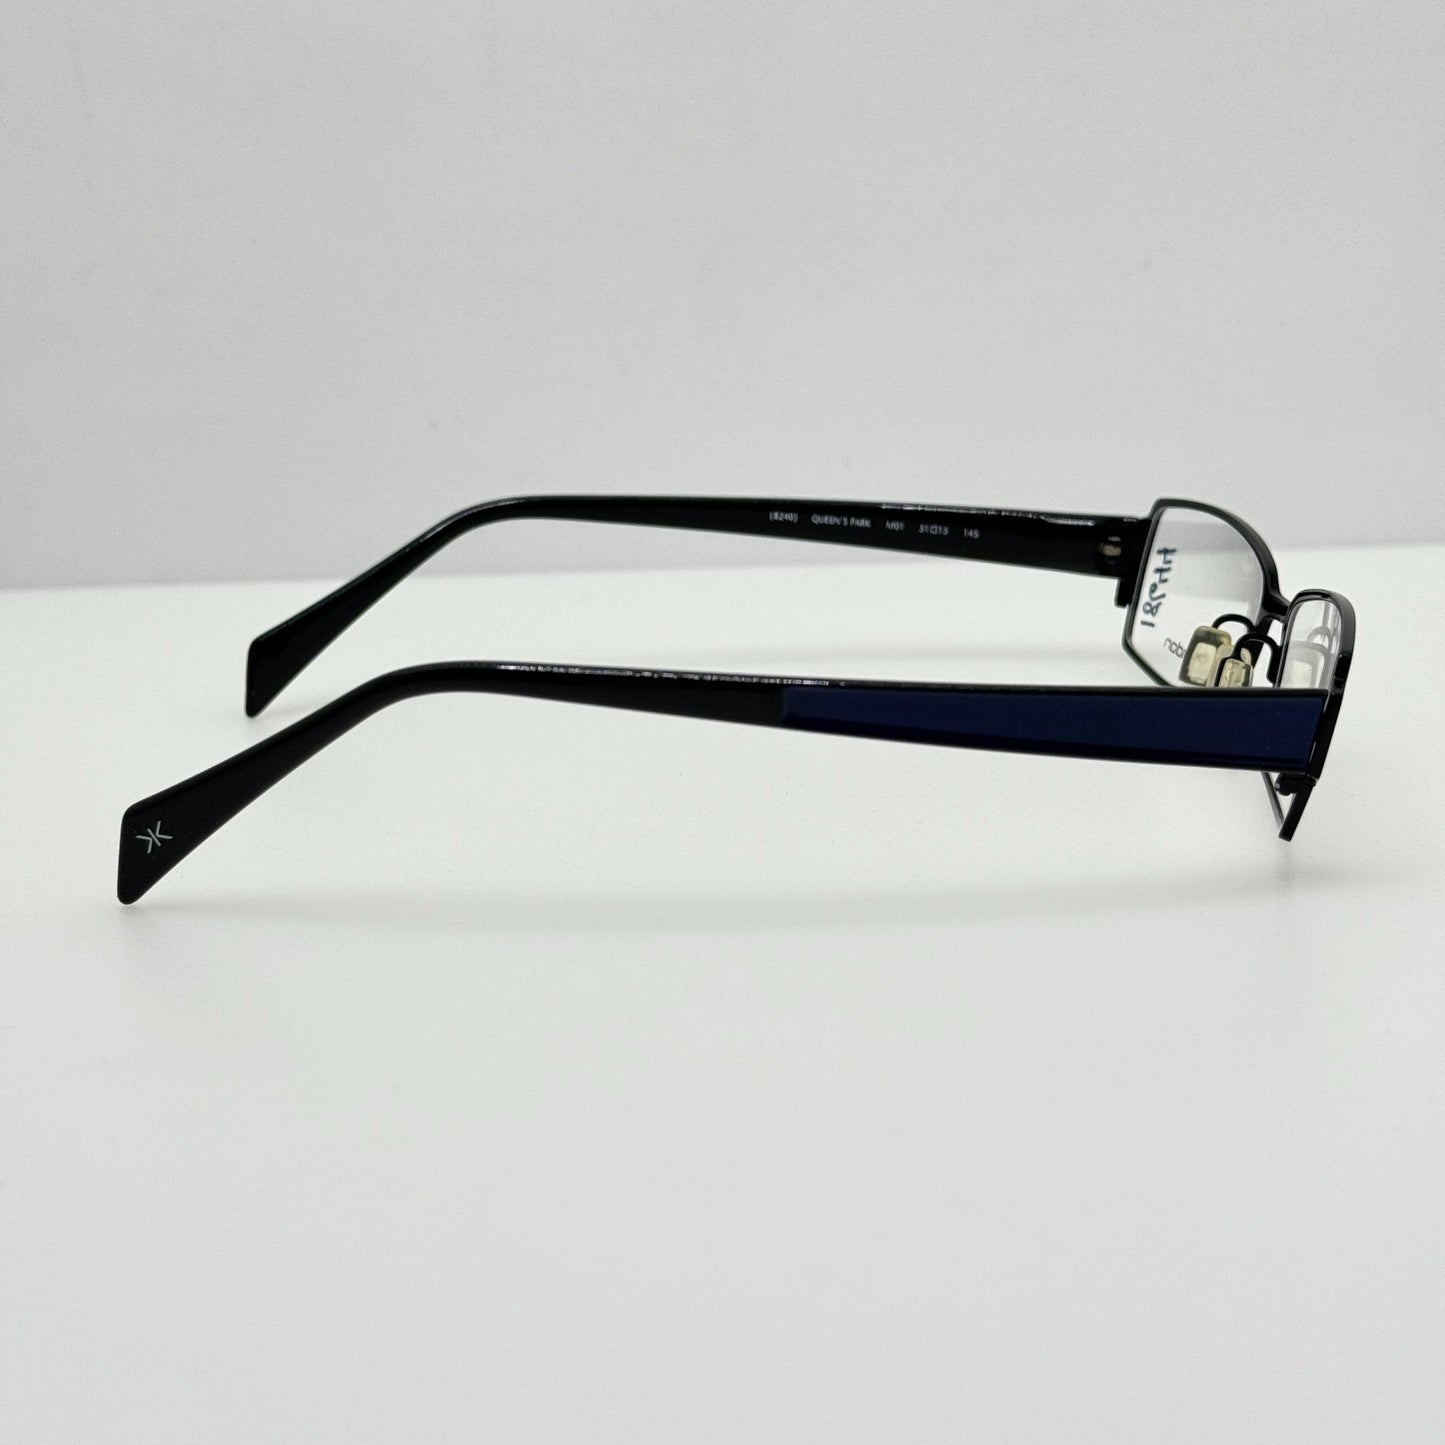 JK London Eyeglasses Eye Glasses Frames 8240 M01 Queen's Park 51-15-145